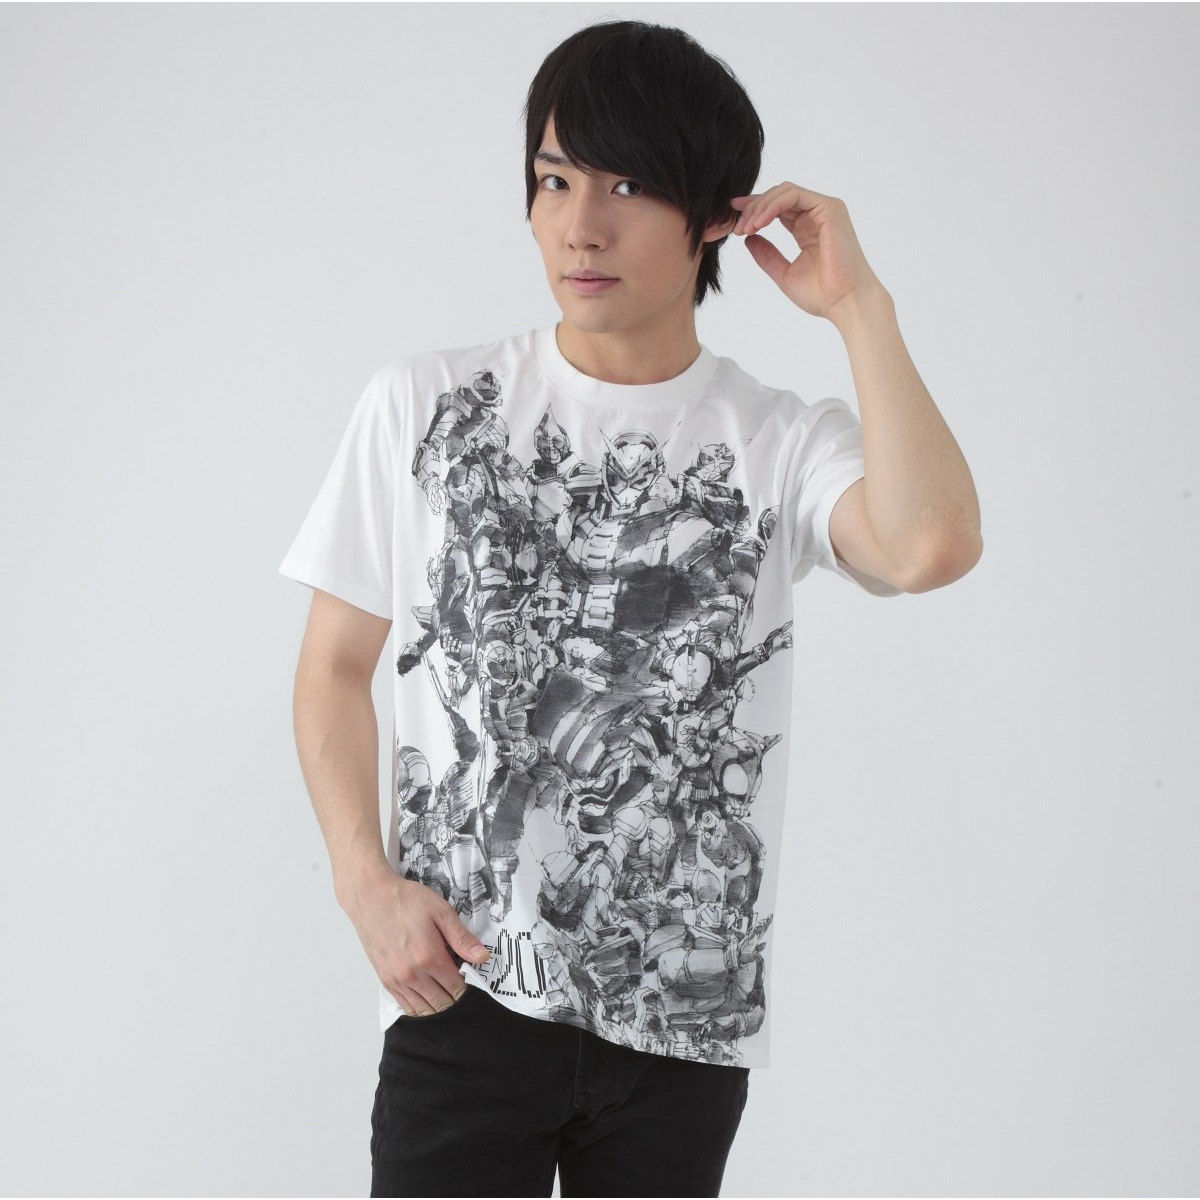 KAMEN RIDER ZI-O & HEISEI RIDER 20th anniversary T-shirt (designed by YOSHIHITO SUGAWARA)